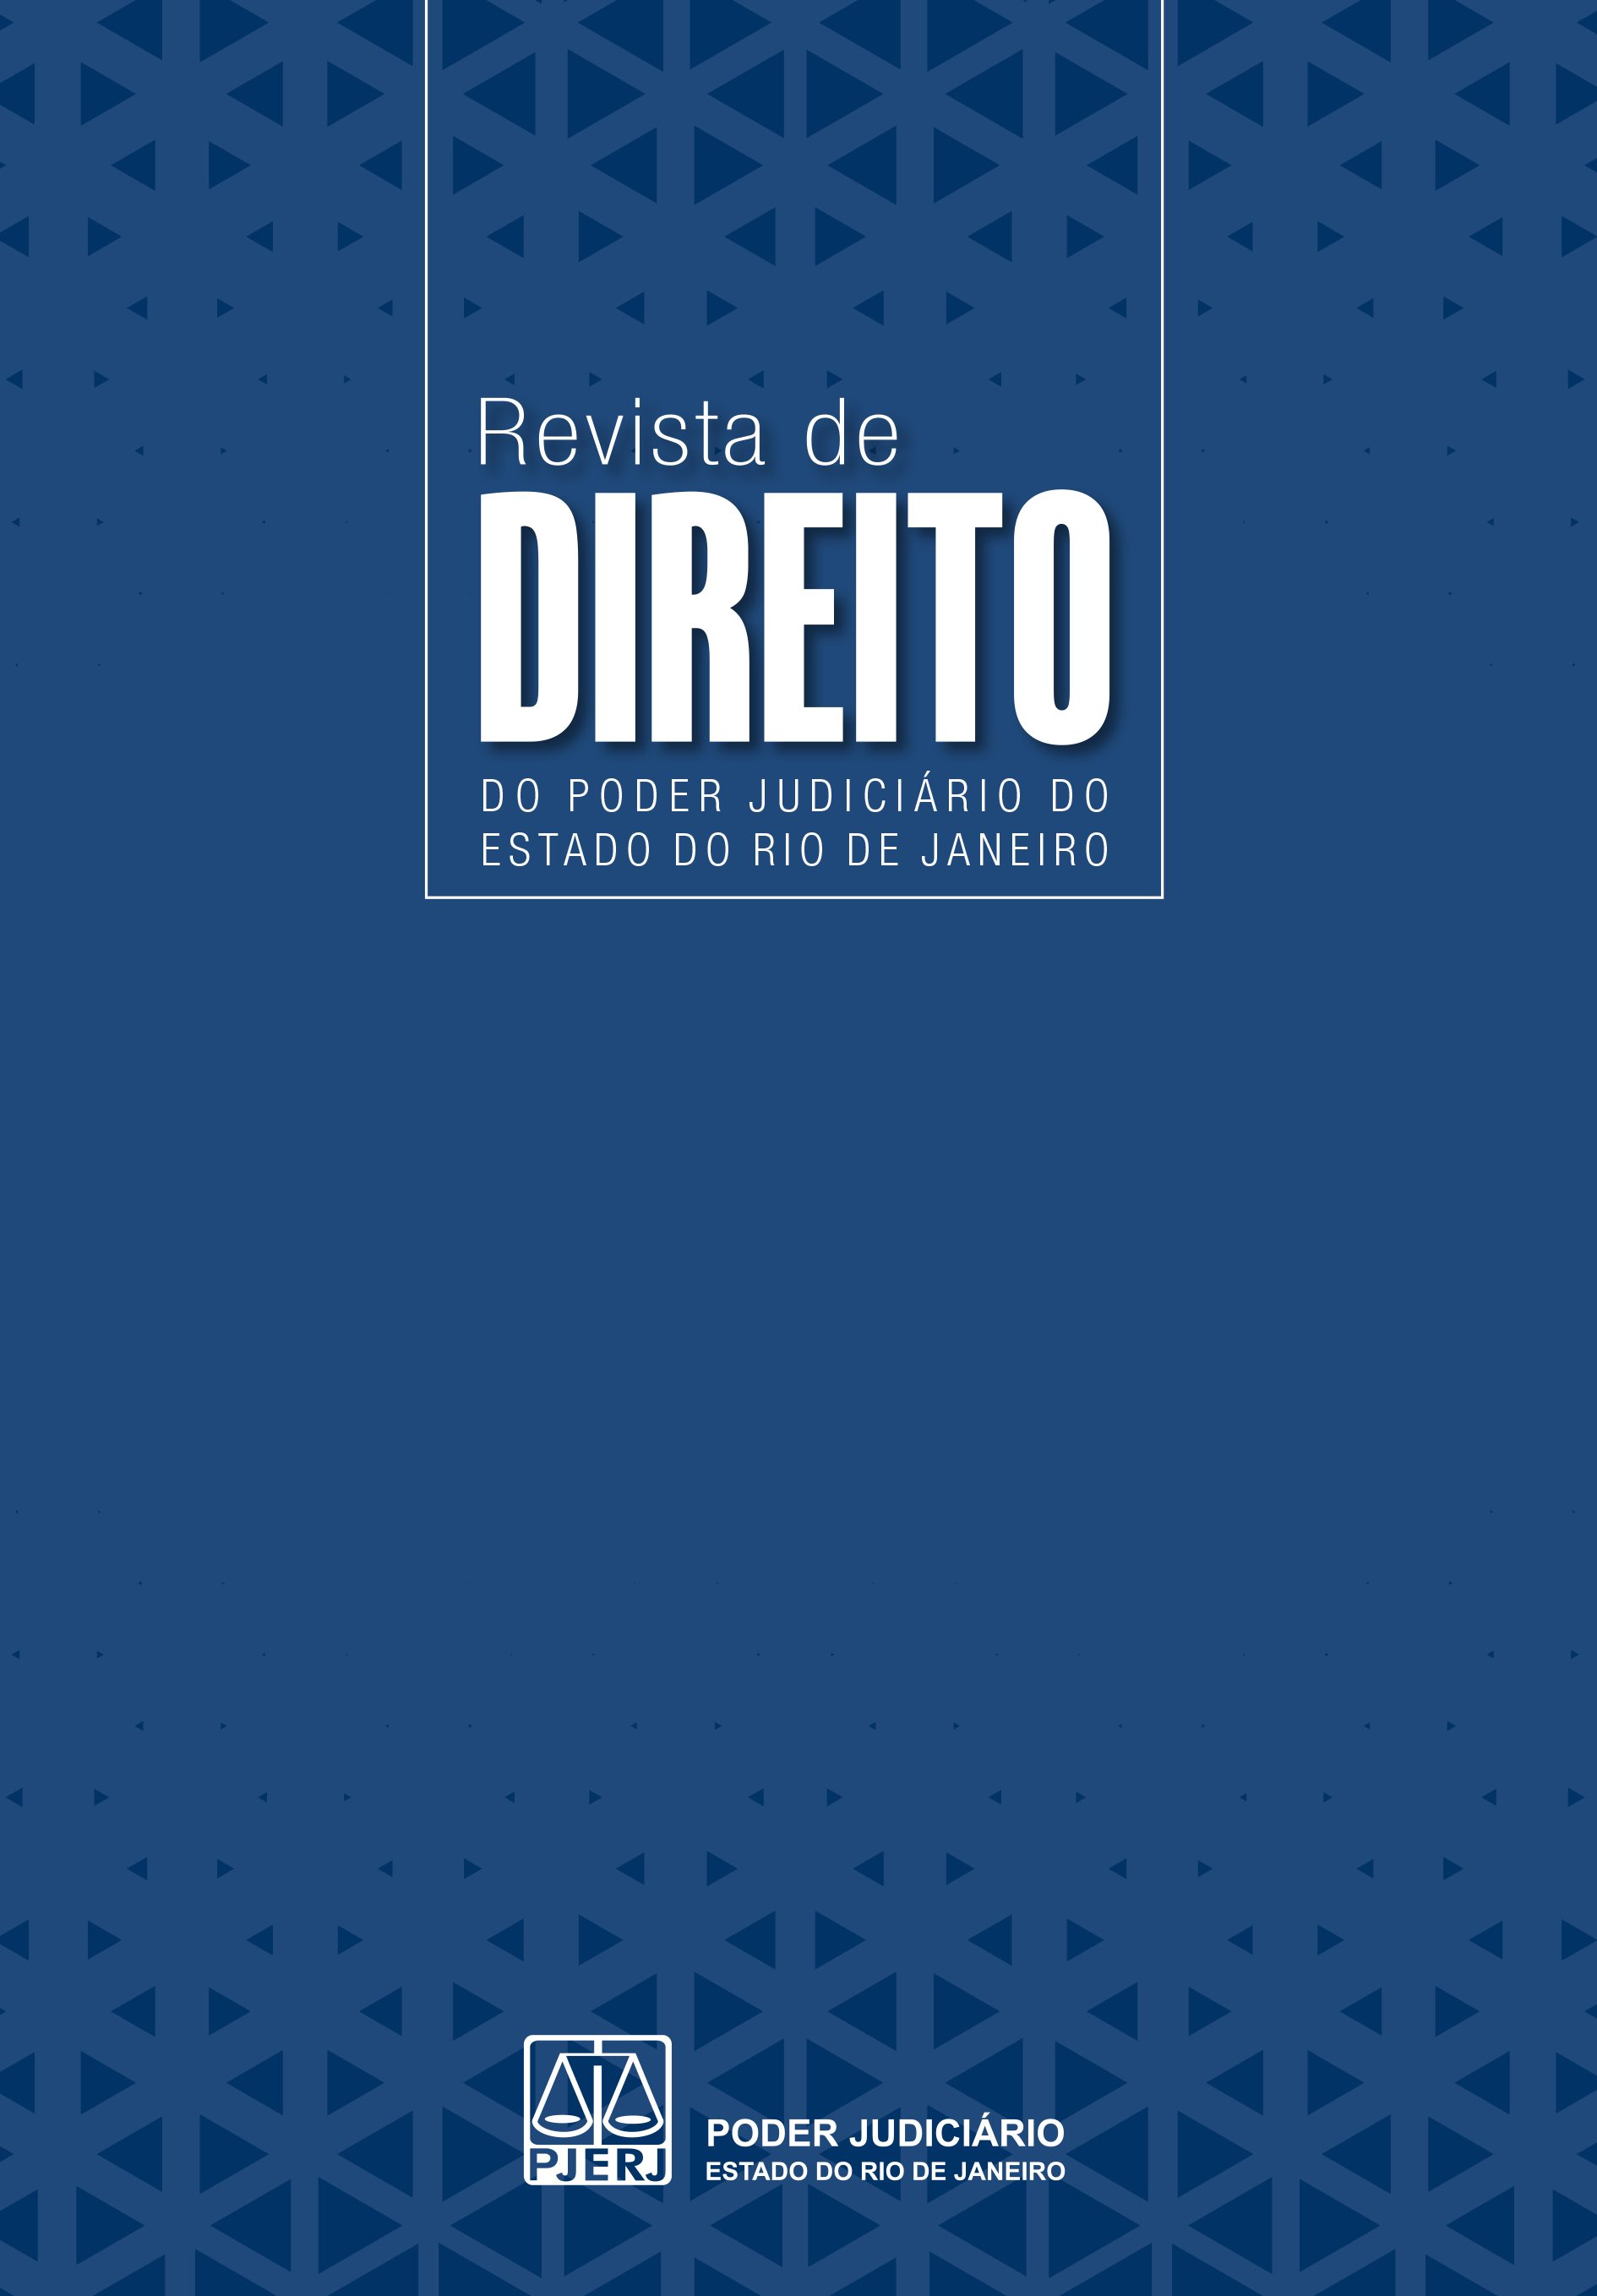 Clique e baixe o arquivo pdf do Volume 1 da Revista de Direito do Poder Judiciário do Estado do Rio de Janeiro